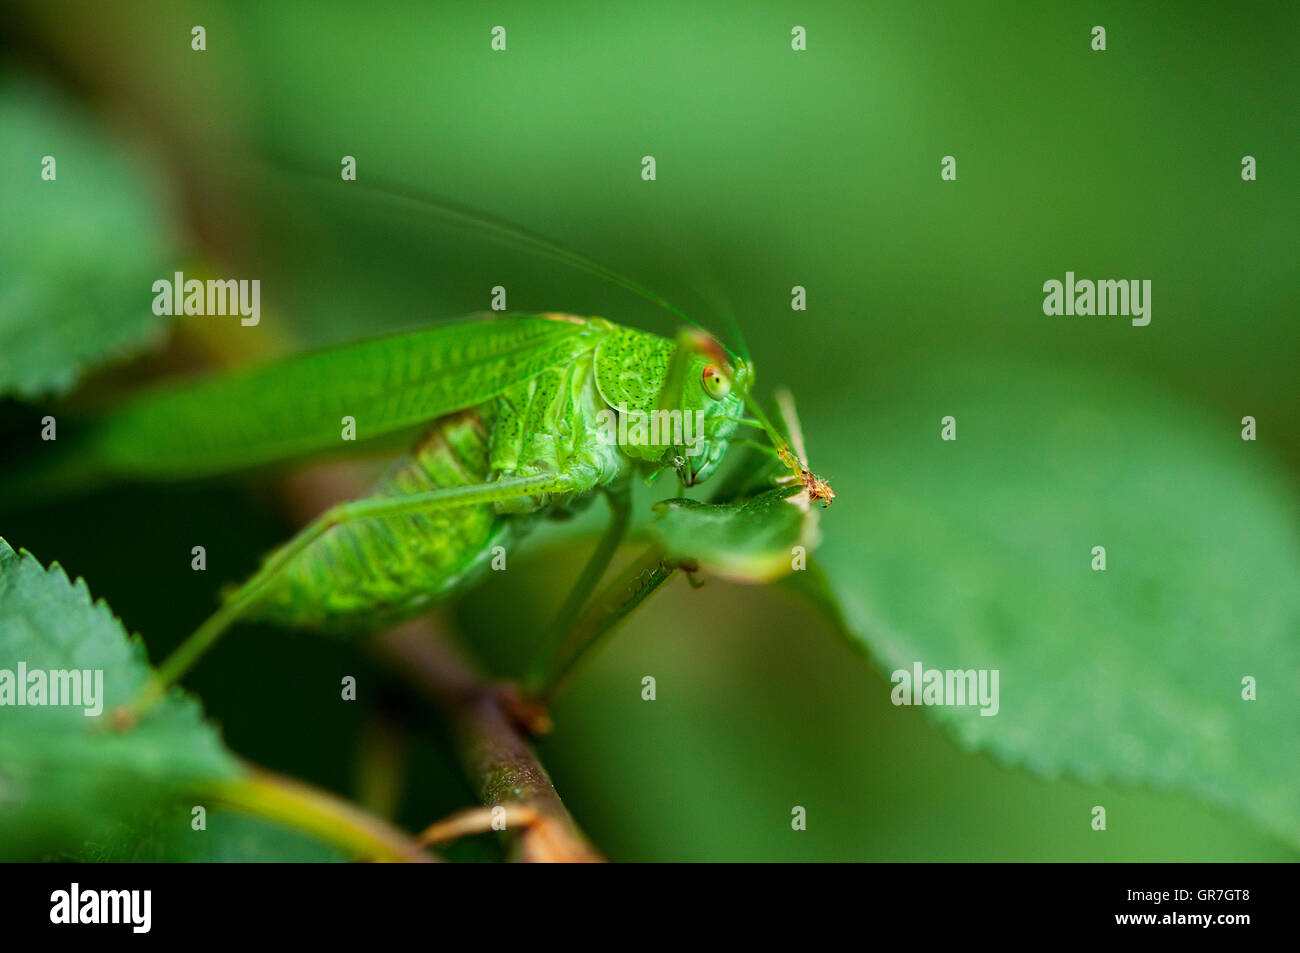 Nahaufnahme auf einer grünen Cricket-Heuschrecke. Heuschrecke, versteckt hinter den Blättern Stockfoto